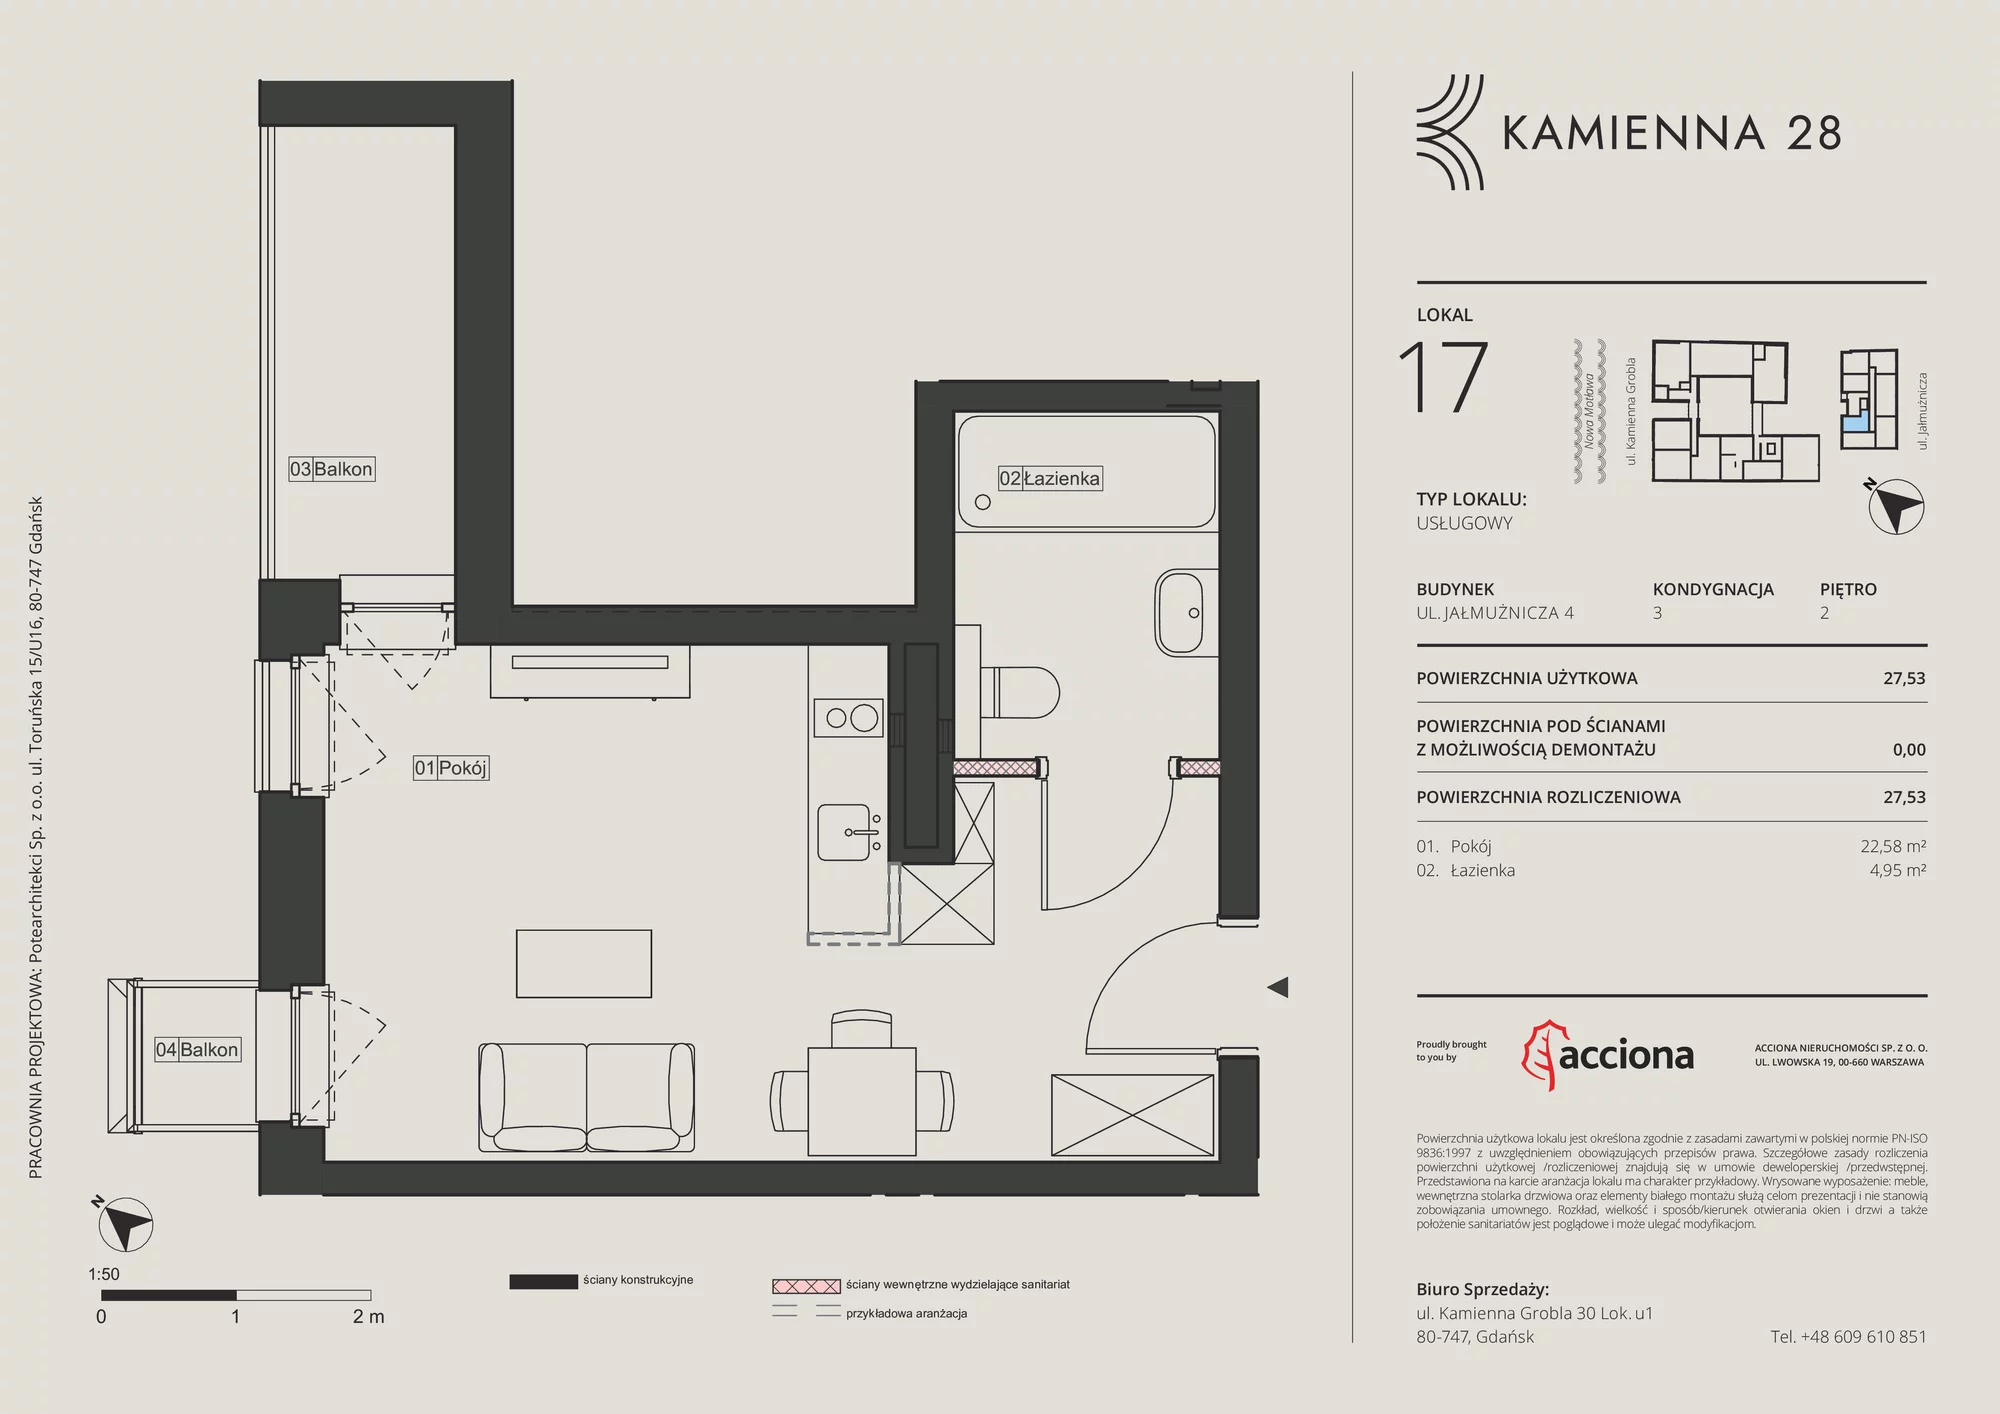 Apartament inwestycyjny 27,53 m², piętro 2, oferta nr 4.17, Kamienna 28 - apartamenty inwestycyjne, Gdańsk, Śródmieście, Dolne Miasto, ul. Jałmużnicza 4